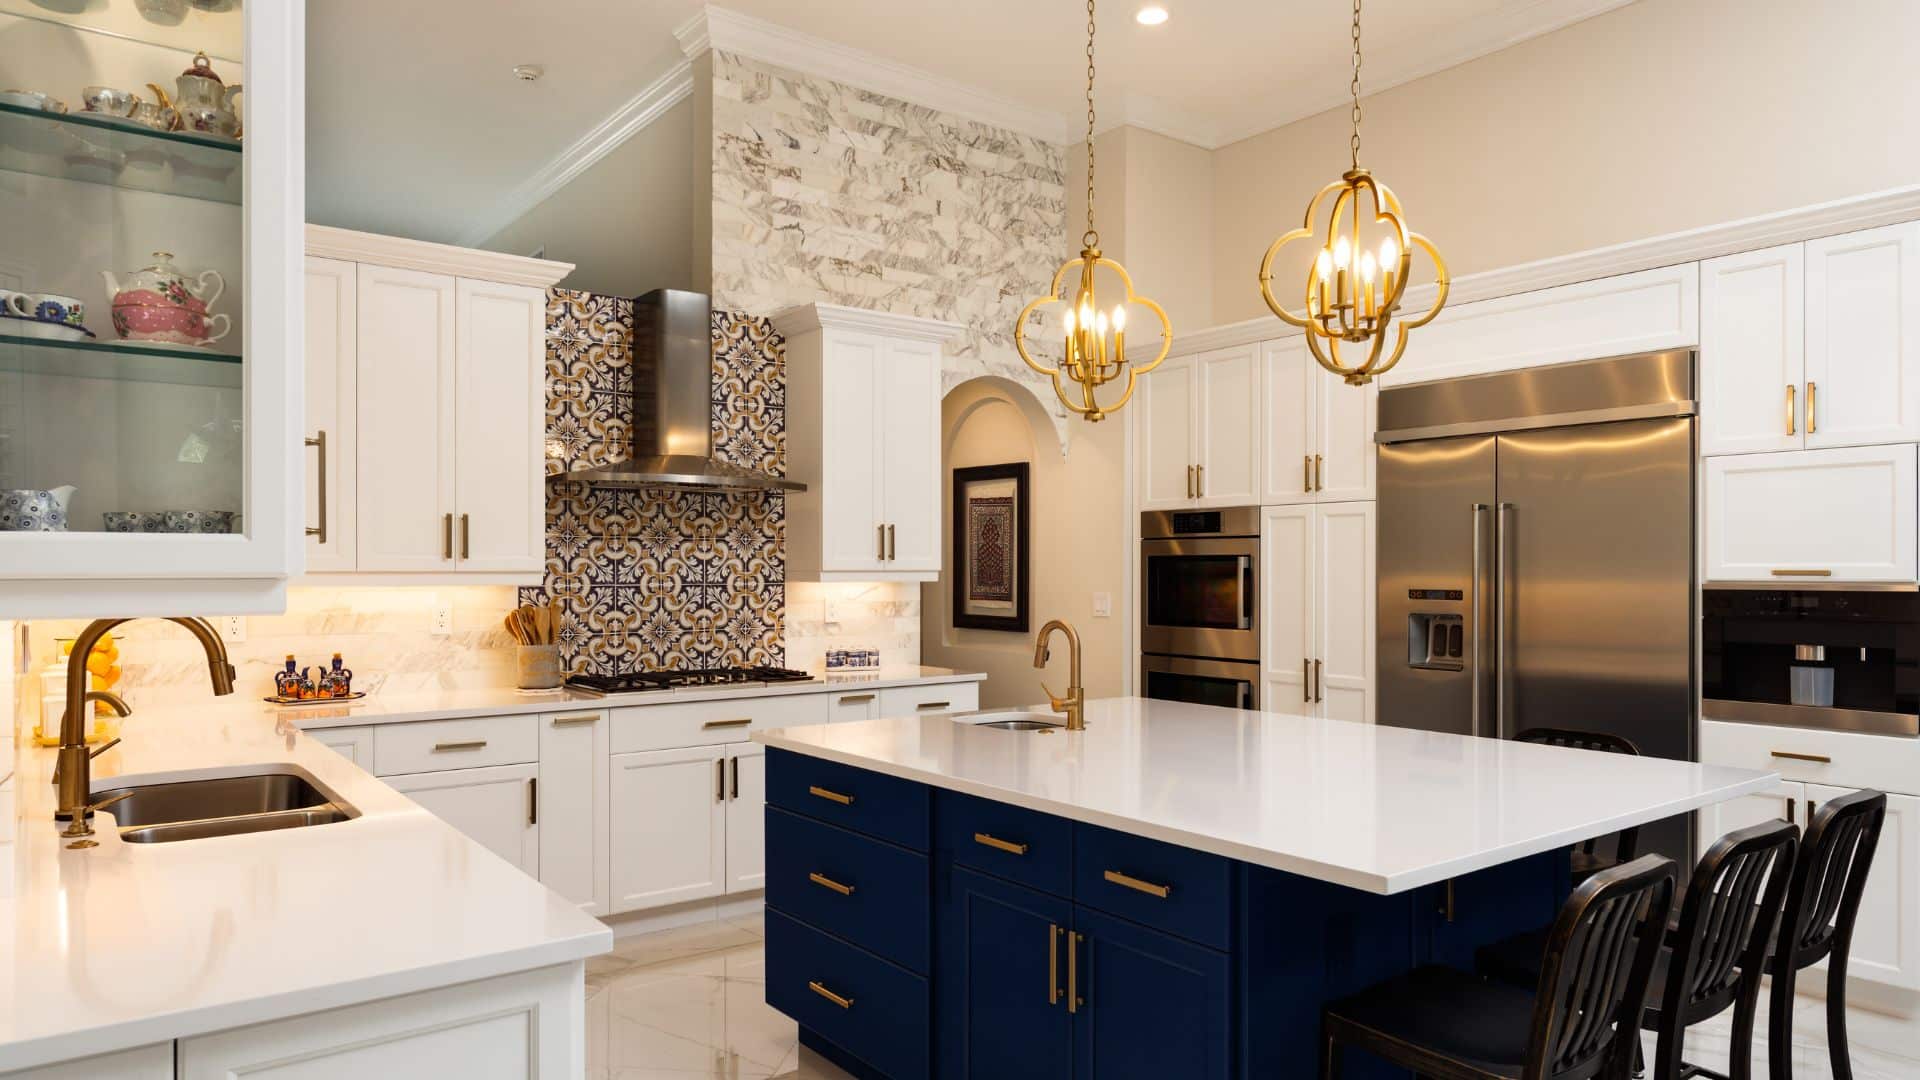 White and blue luxury kitchen design